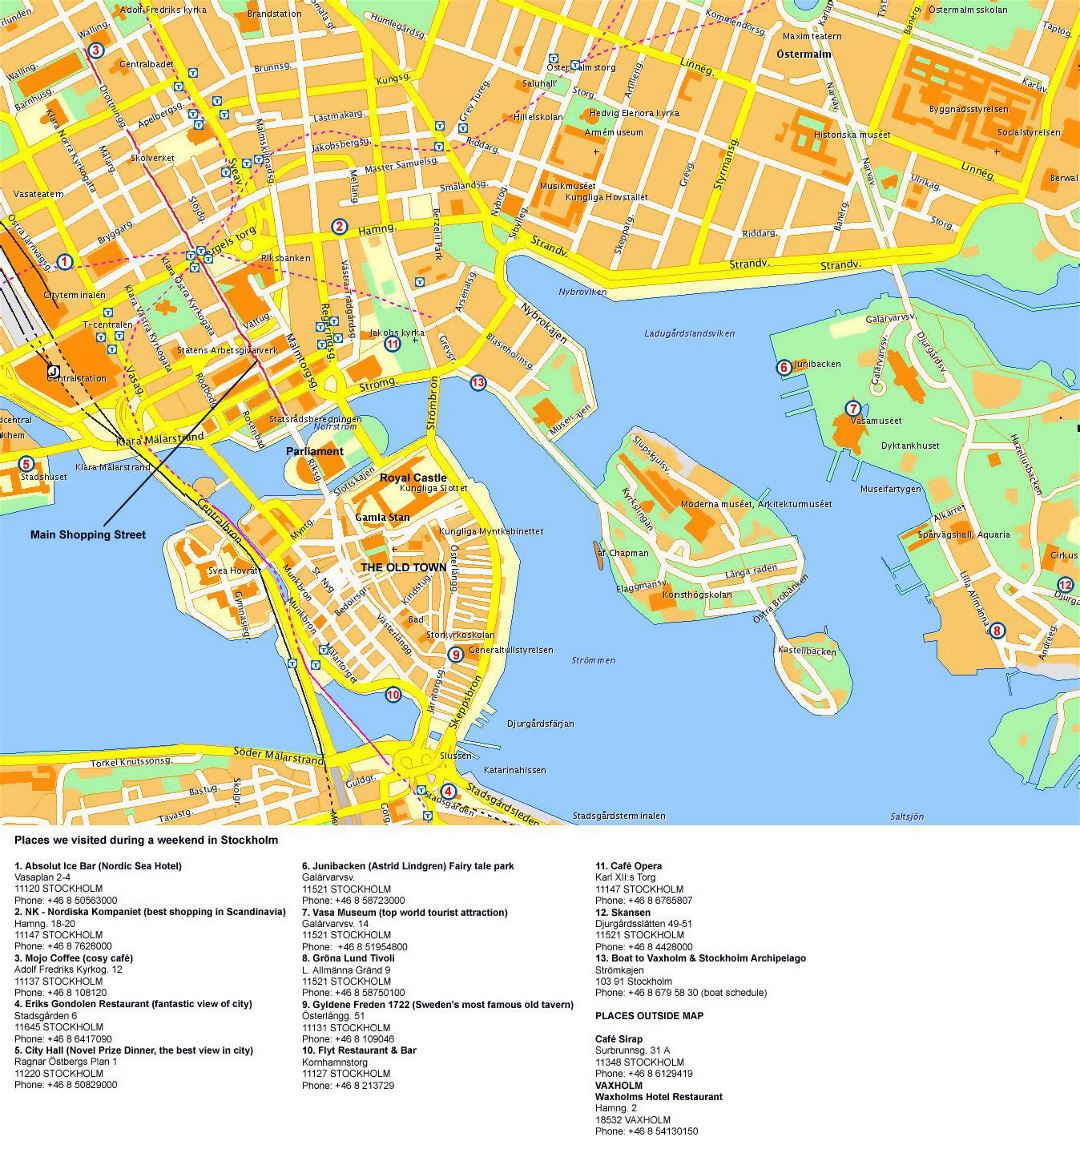 Detallado mapa turístico del centro de Estocolmo